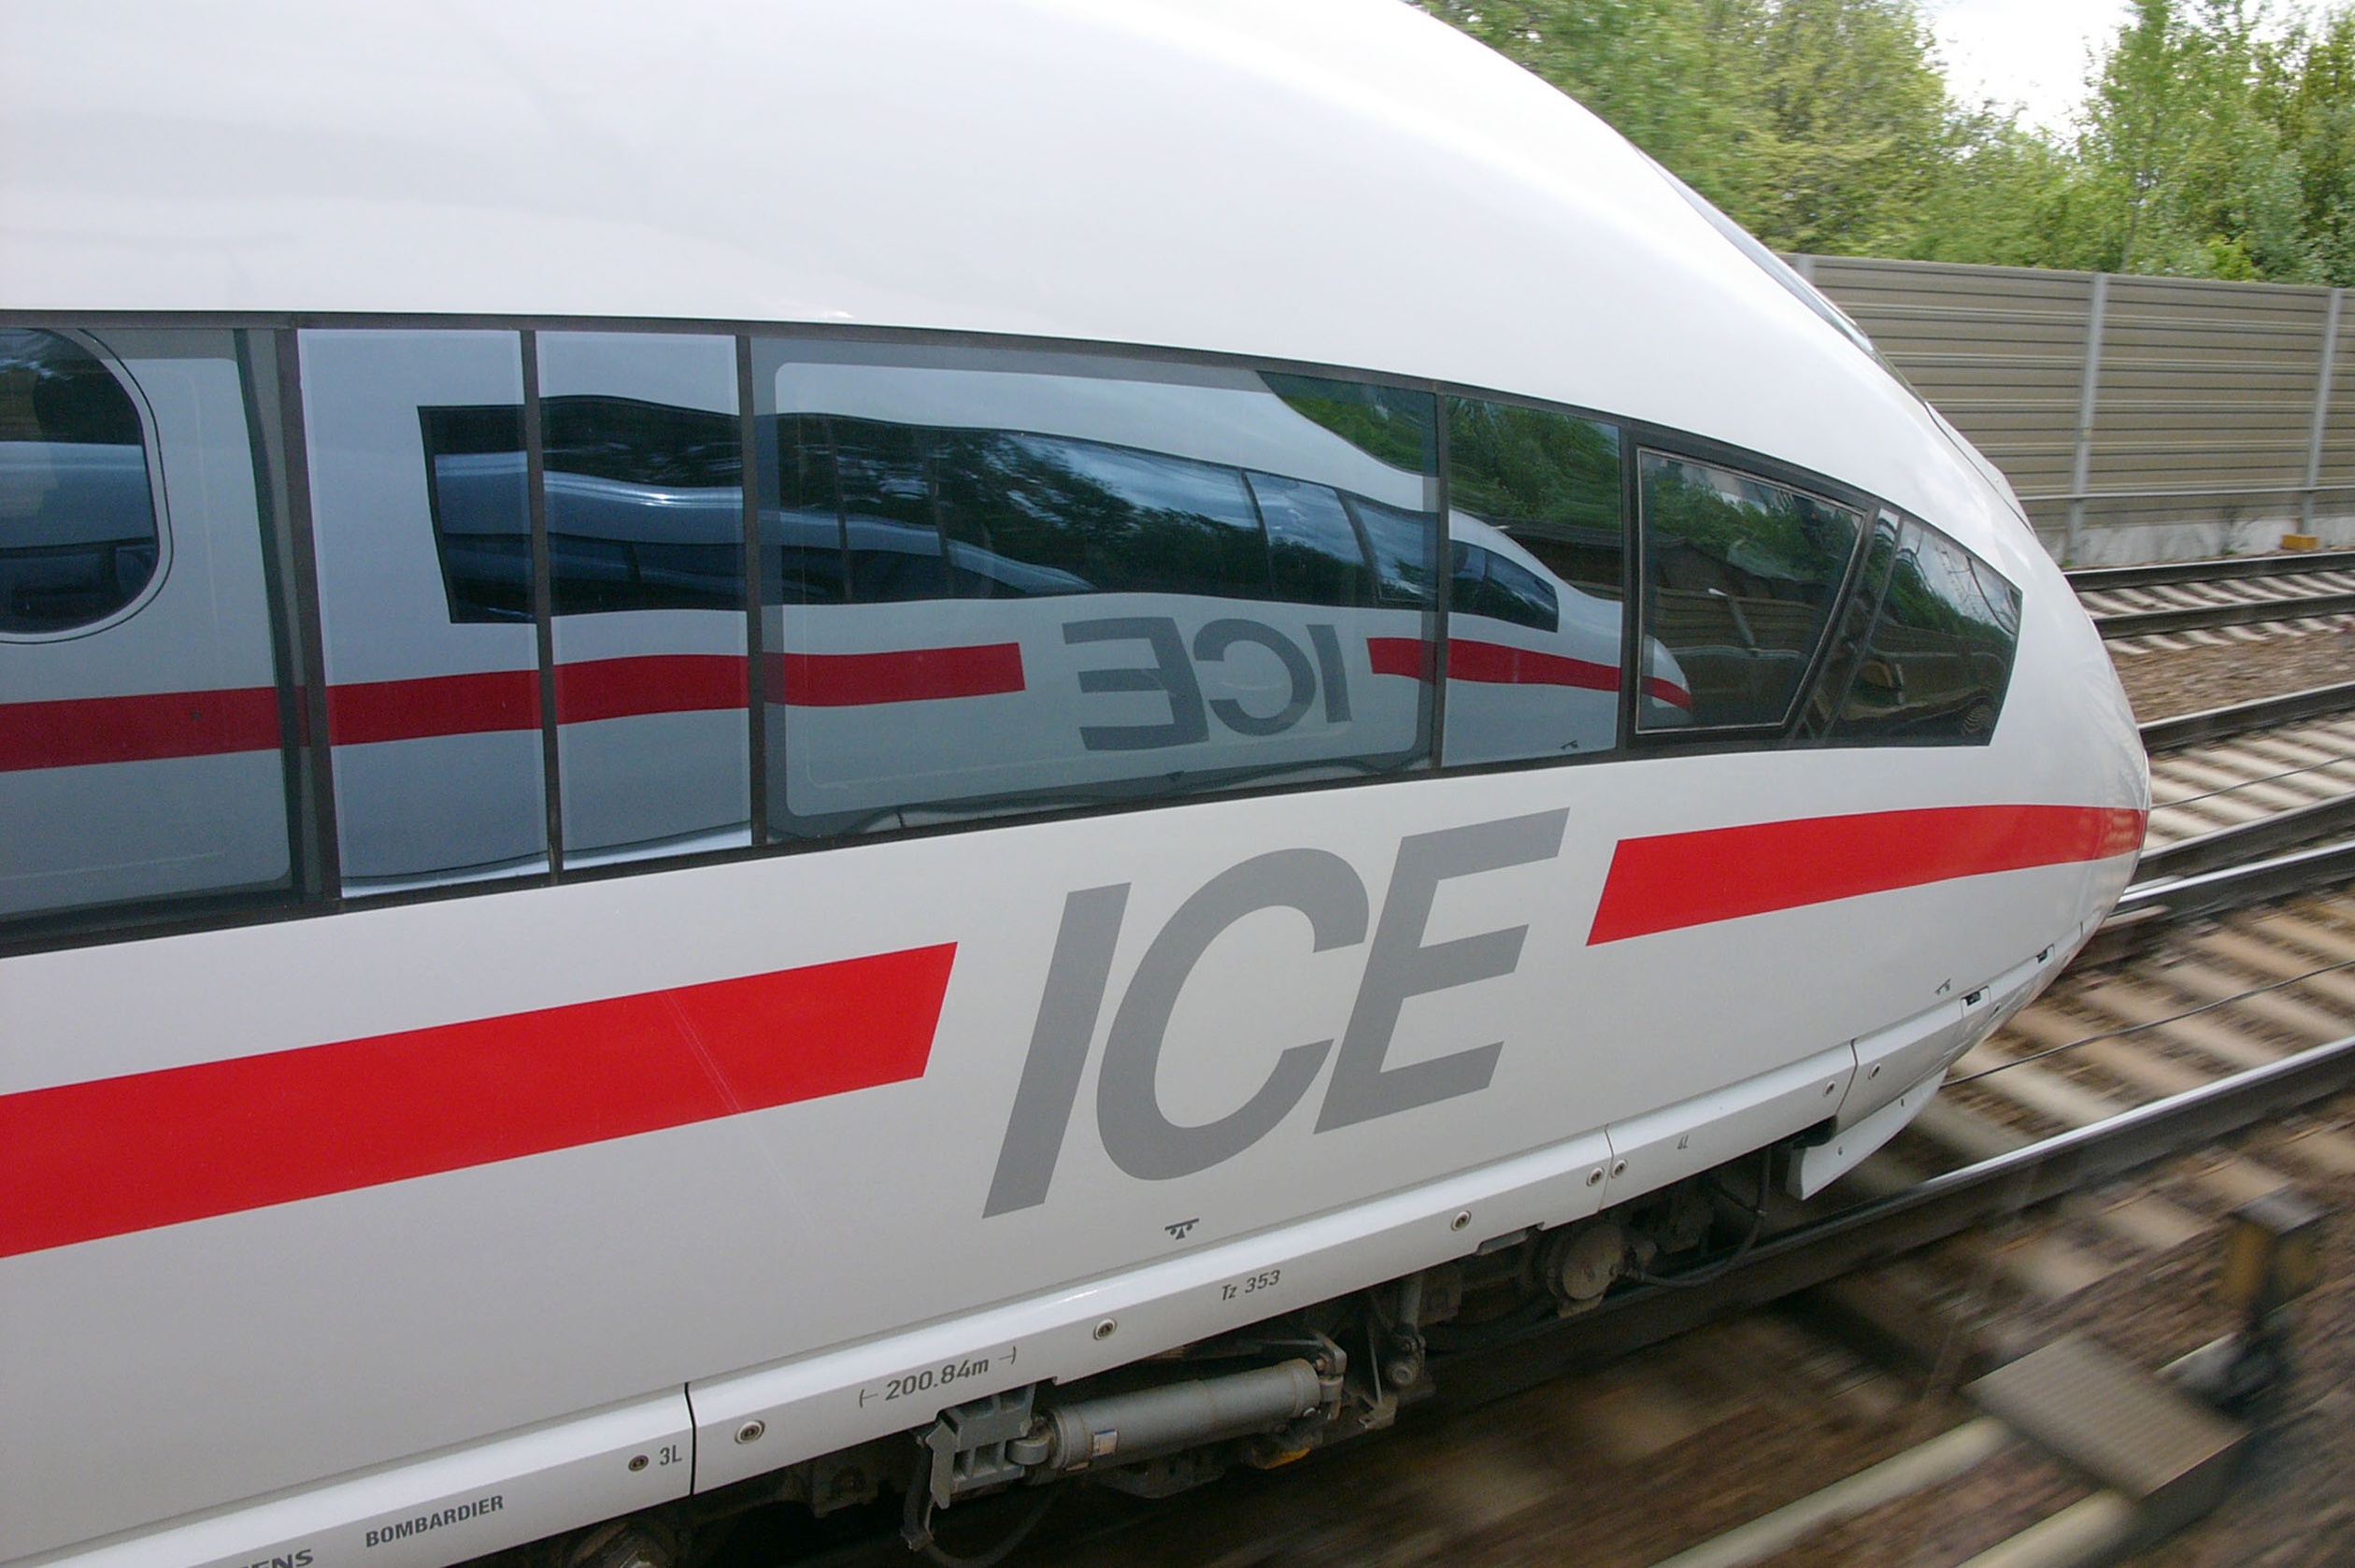 У 1991 році Німецькі Залізниці введи в експлуатацію Intercity-Express (ICE) -сучасний високошвидкісний поїзд для далеких пасажирських перевезень